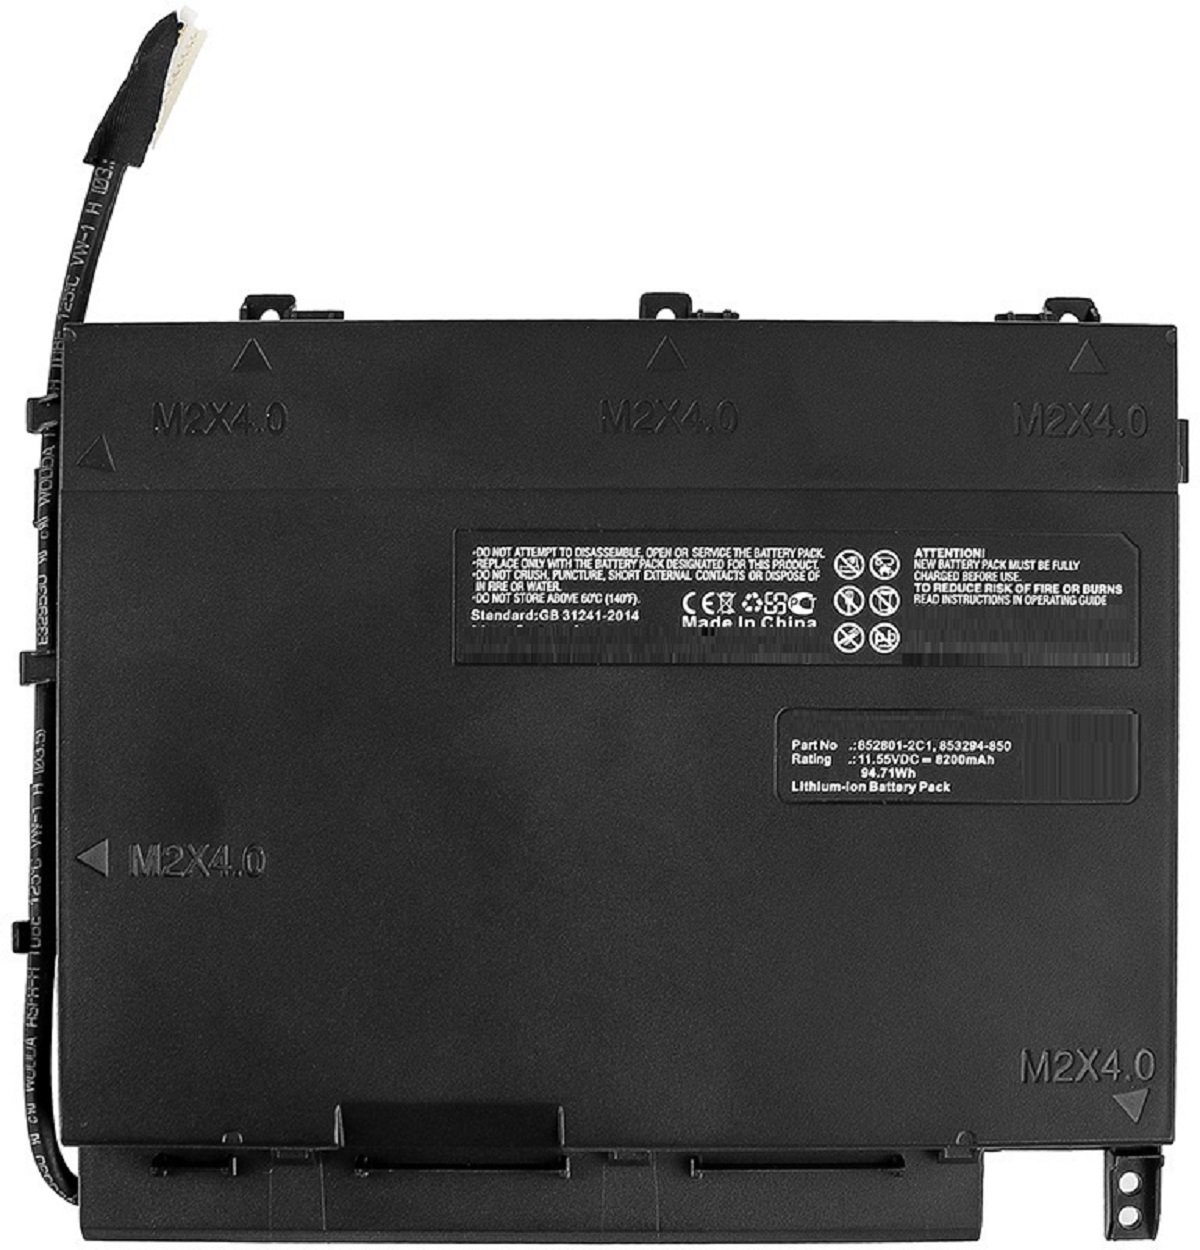 Akku kompatibel Li-Ion, Li-Ion HP mit mAh Volt, 853294-850 AGI 11.55 Notebookakku, 8200